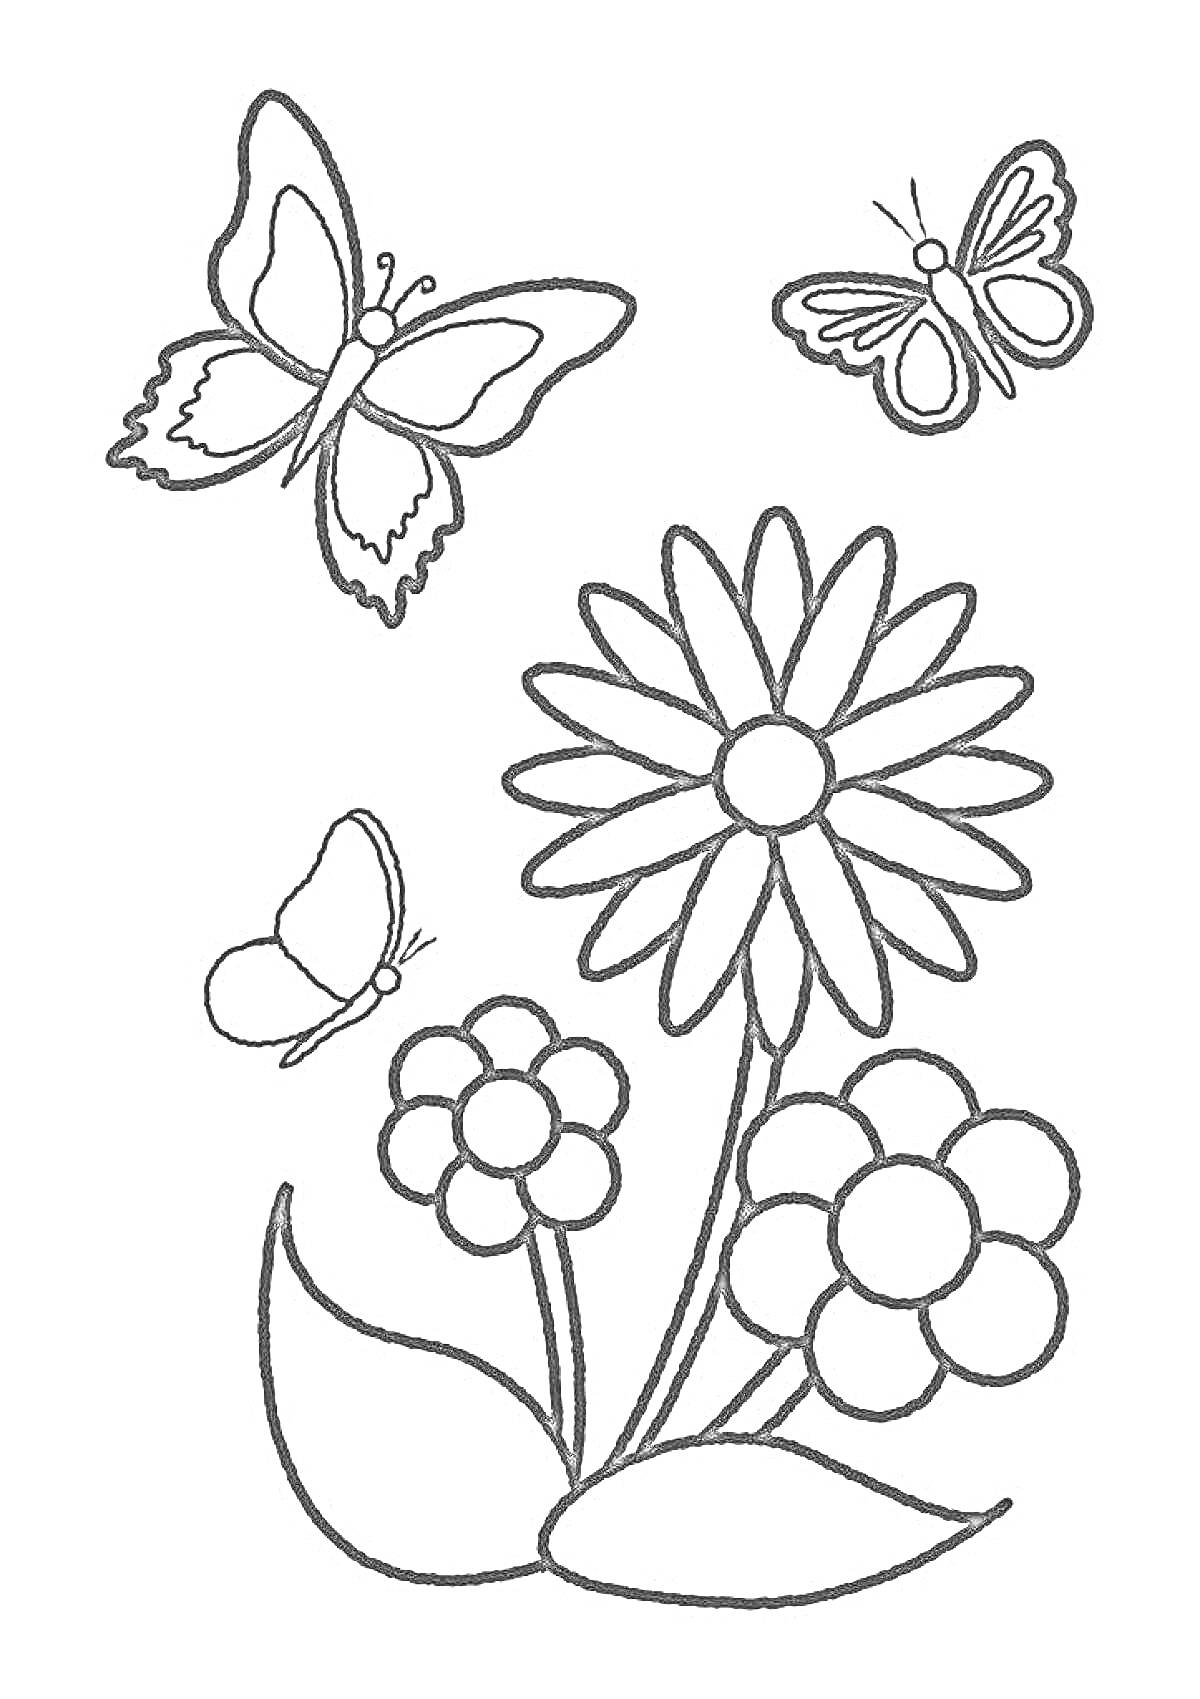 Раскраска Цветы и бабочки - две большие бабочки, одна маленькая бабочка, три цветка с лепестками и два листа